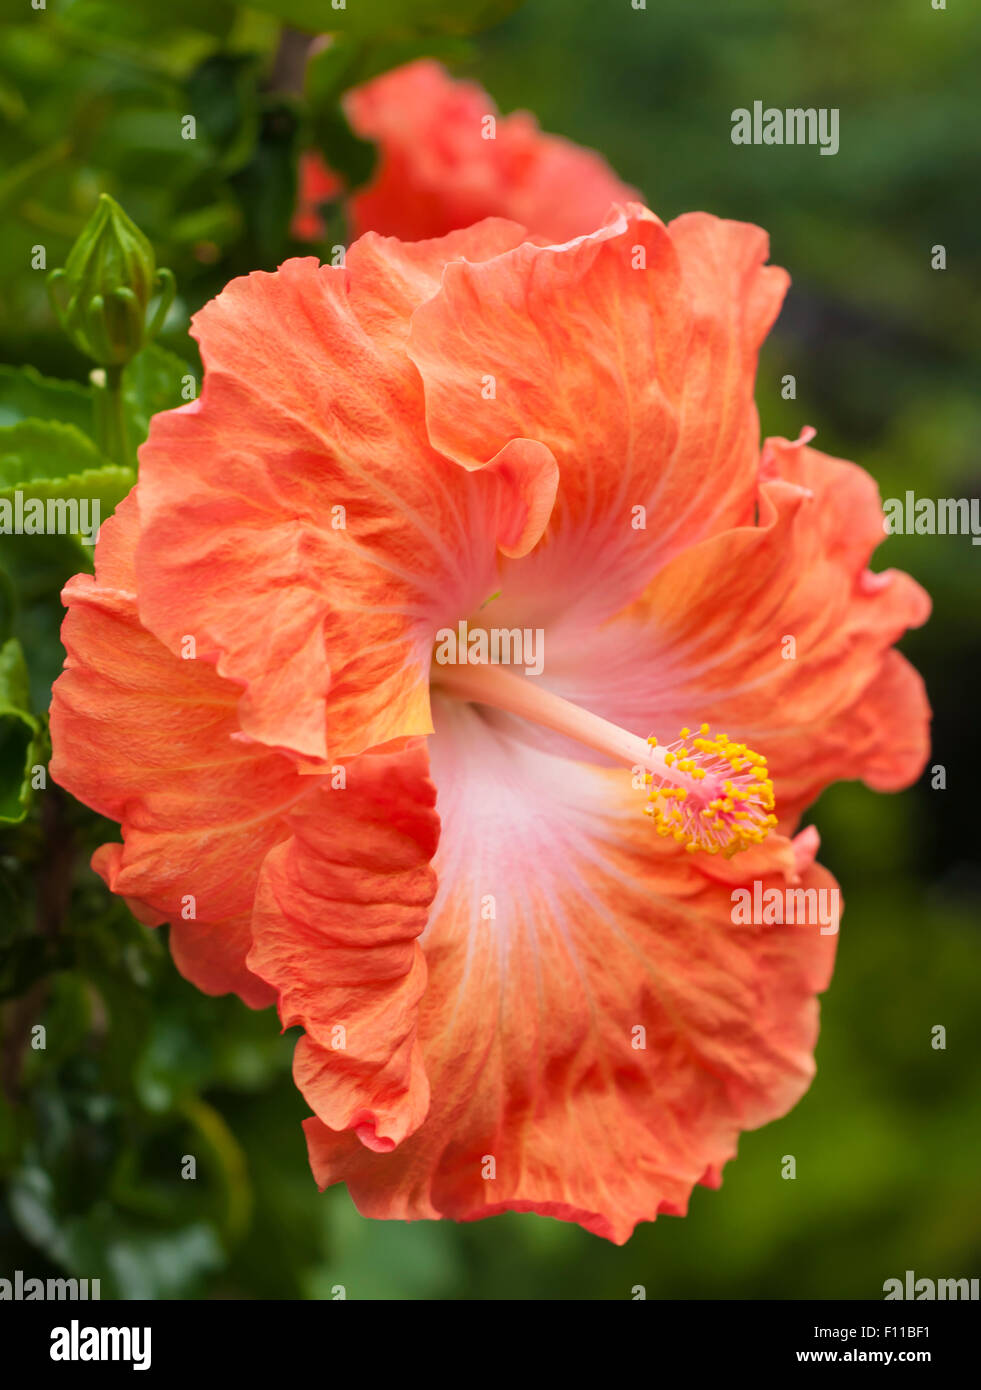 Fleur d'hibiscus rouge avec la stigmatisation. Pris sur le Maj 23, 2015 Banque D'Images